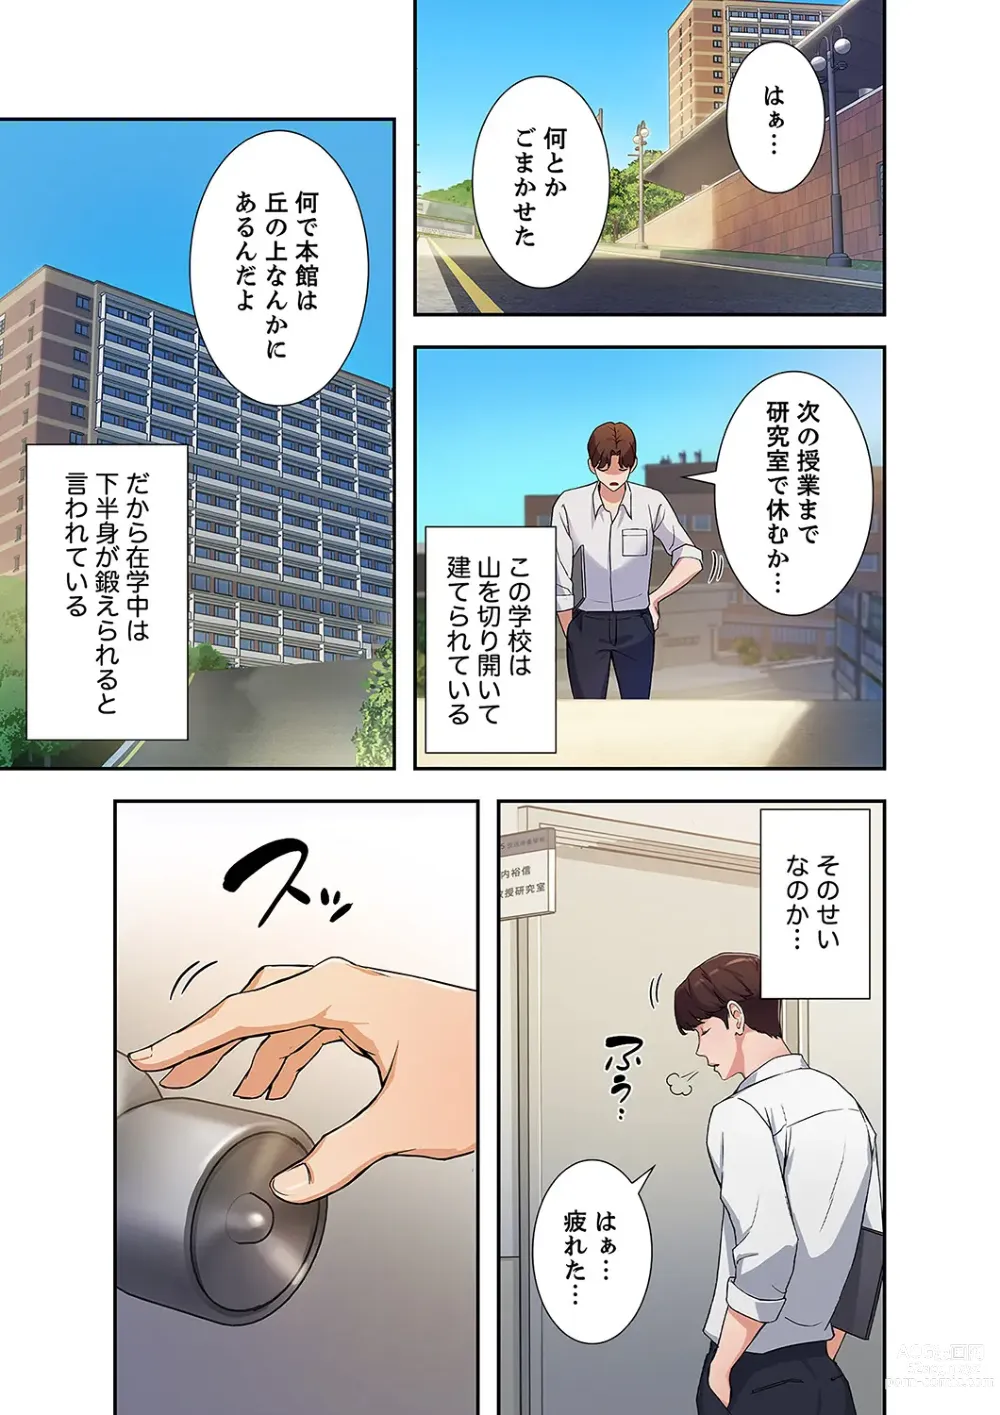 Page 11 of manga Hatachi 01